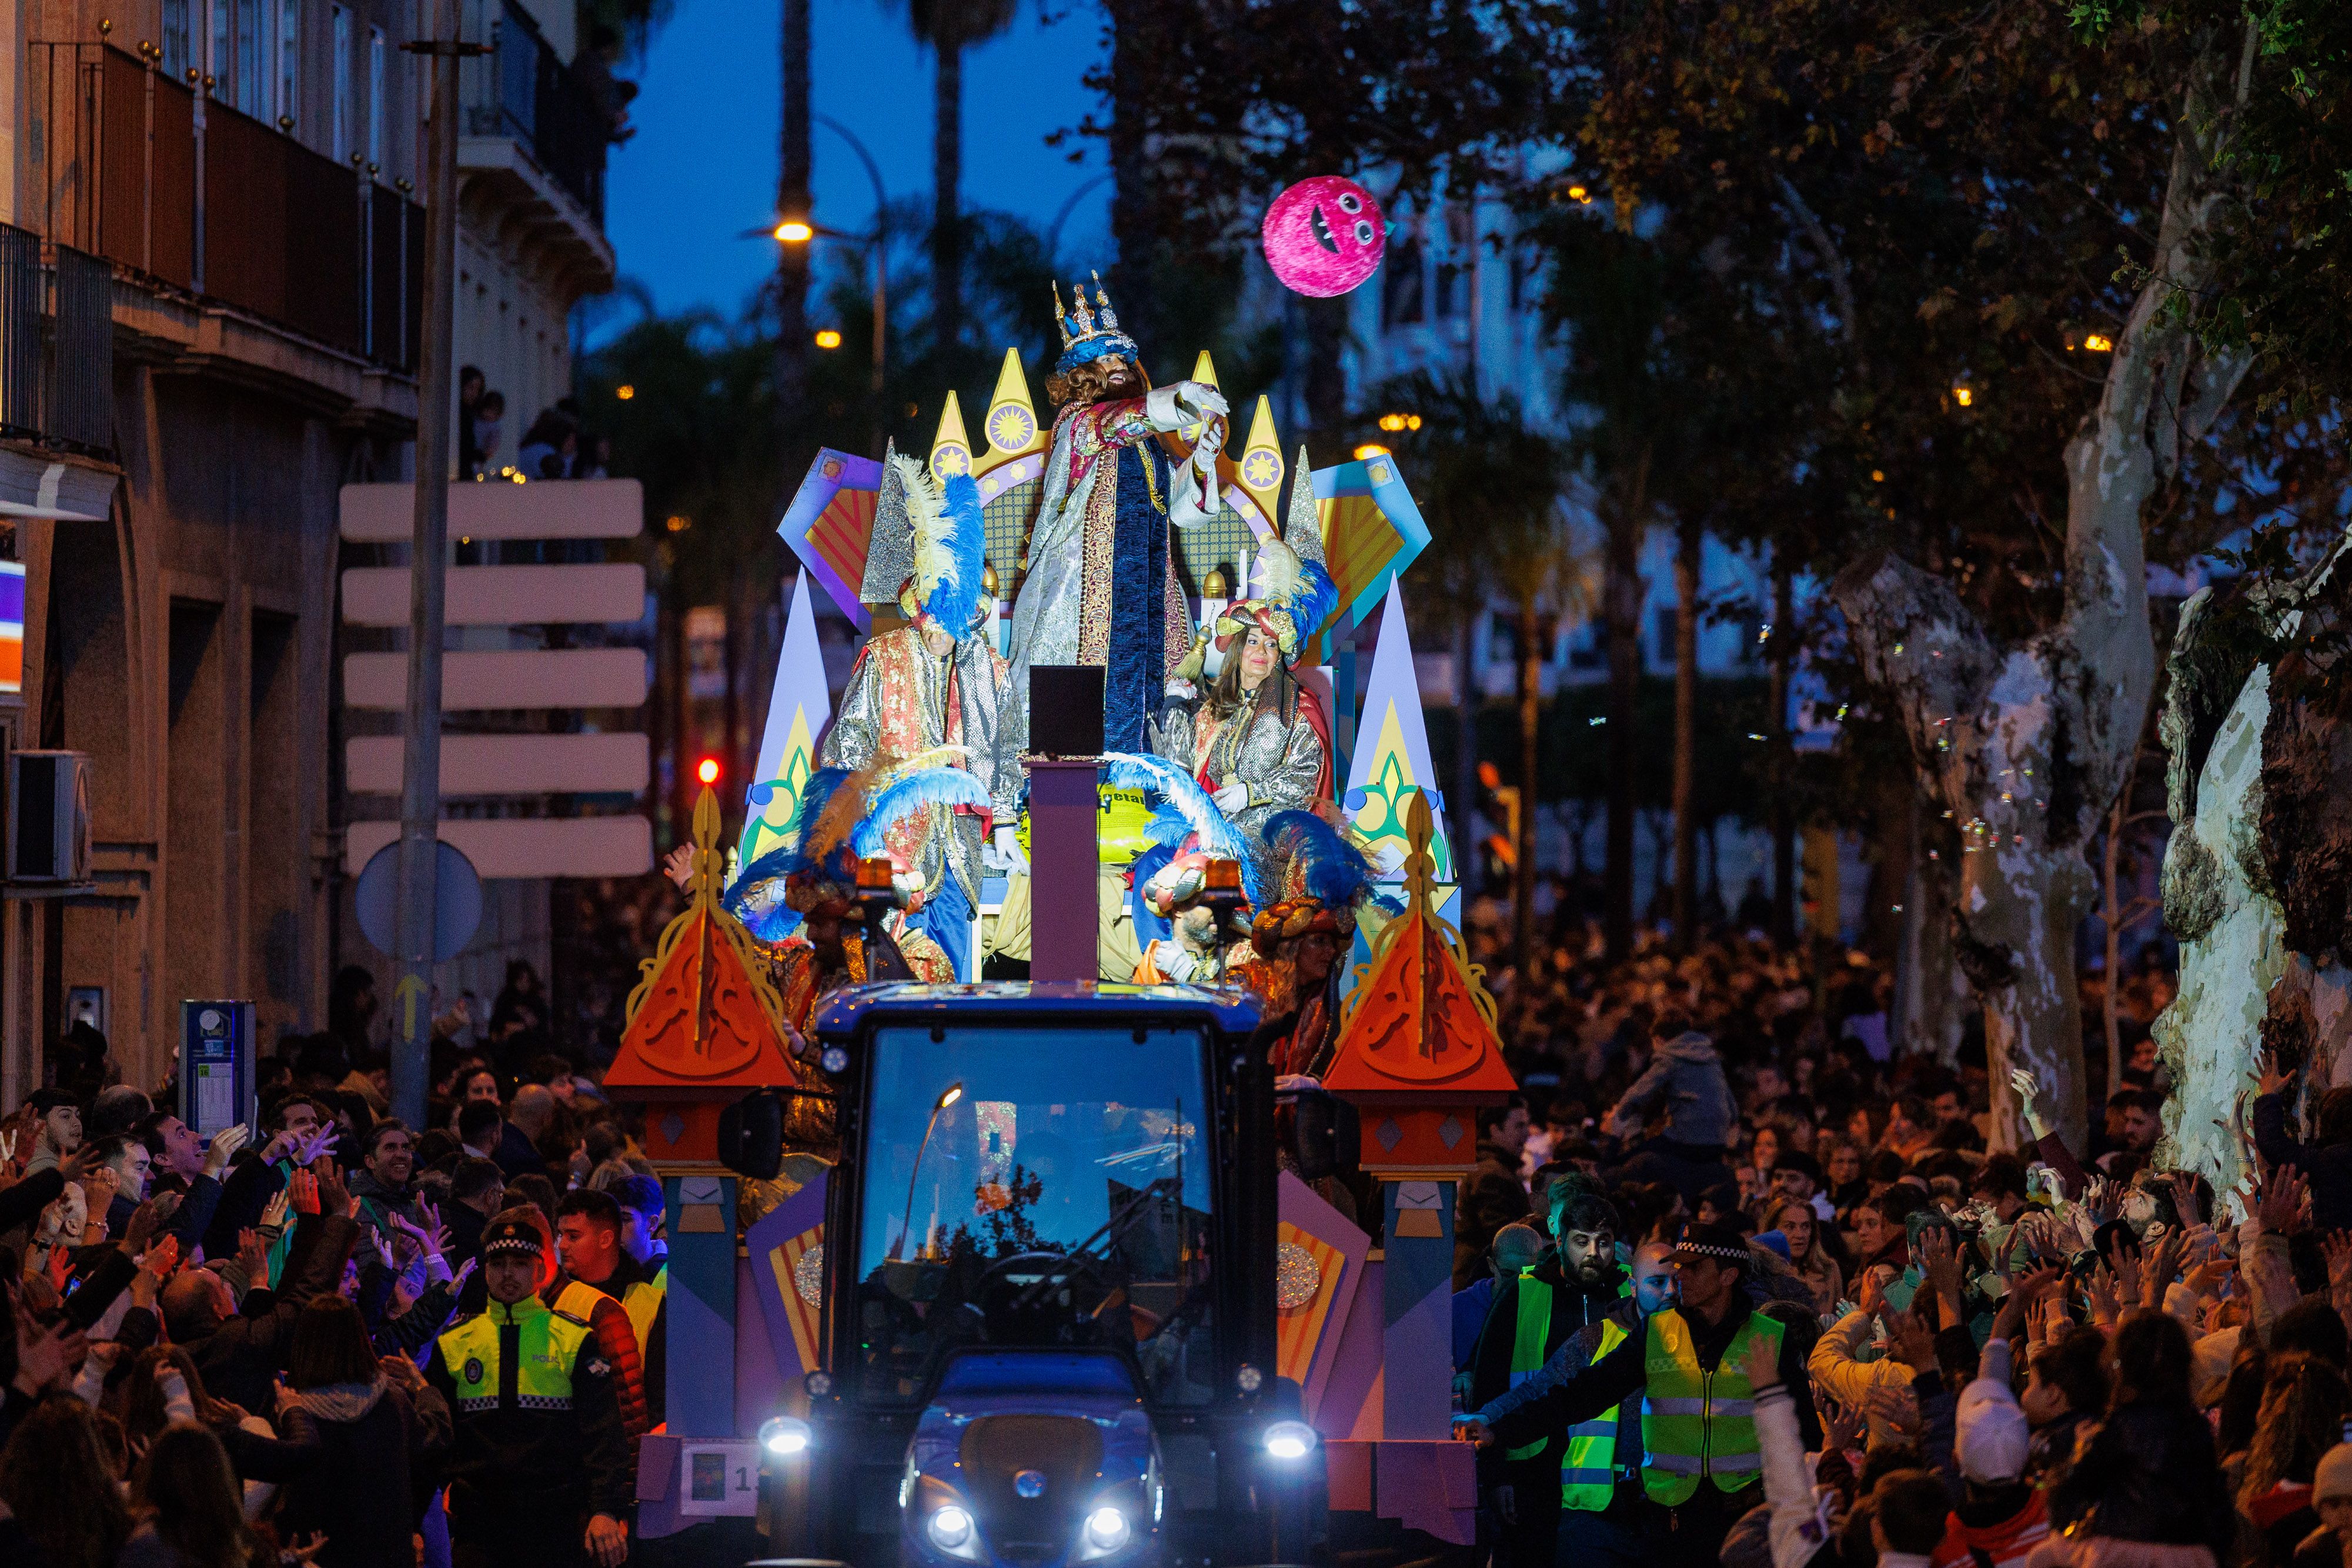 Un momento de la llegada de la Cabalgata de Reyes al centro de Jerez, en la plaza del Mamelón, este viernes por la tarde-noche.